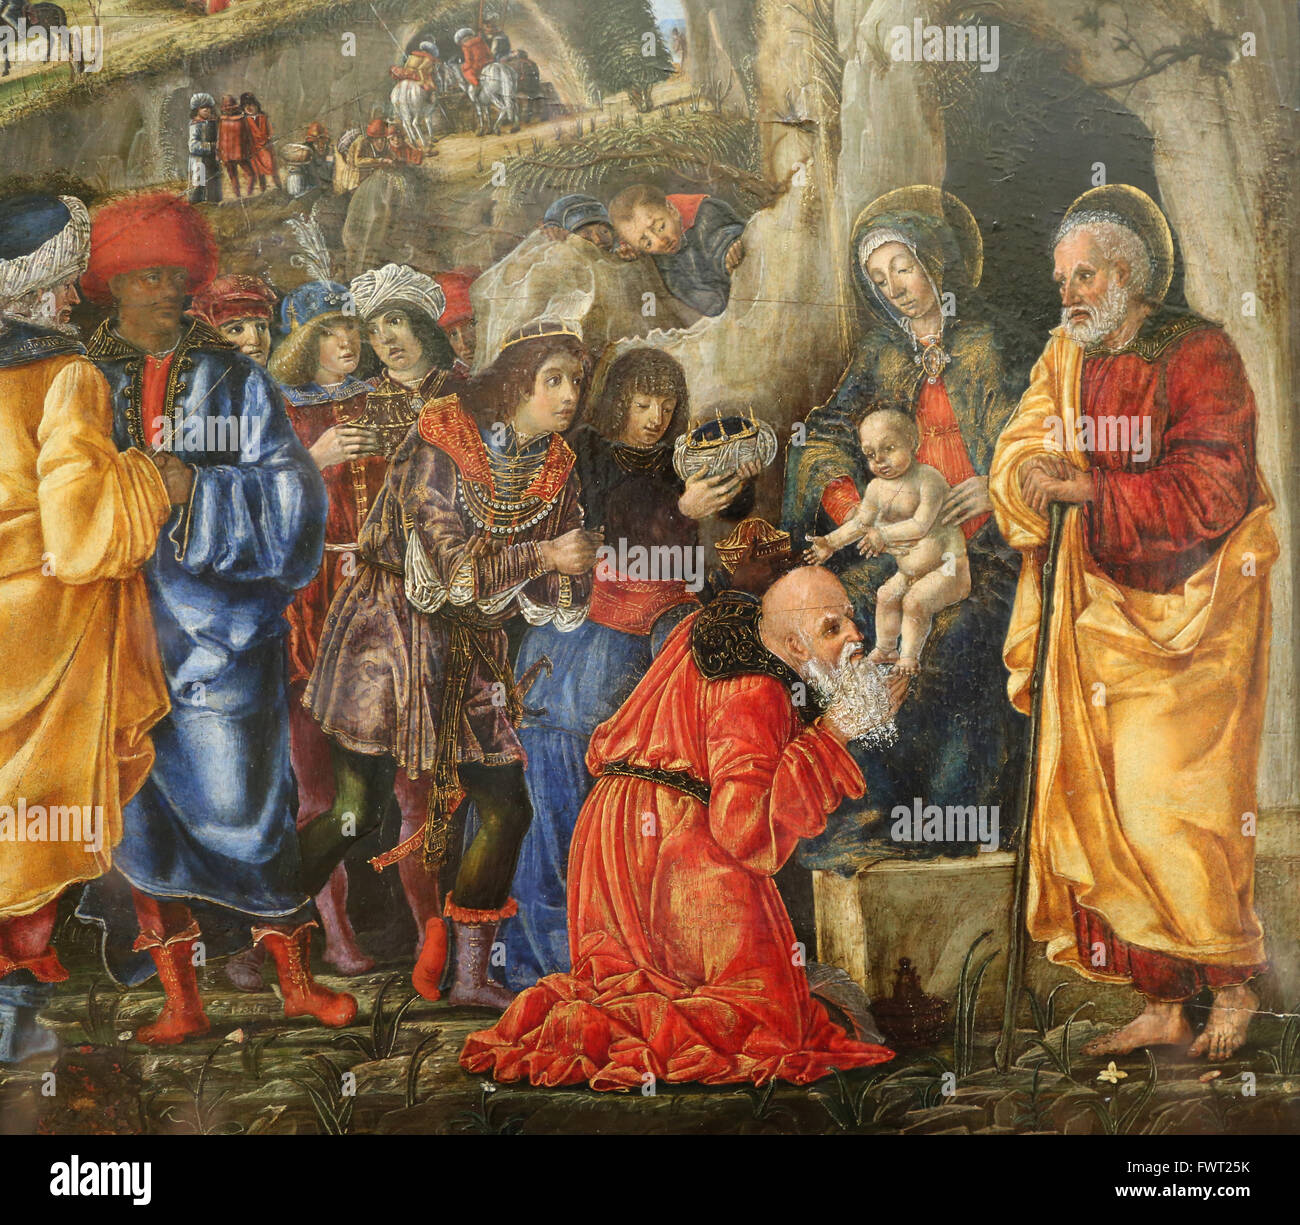 Bernardo Parentino (1450-1500). Italienischer Maler. Renaissance. Die Anbetung der Könige, 1475. Louvre-Museum. Paris. Frankreich. Stockfoto